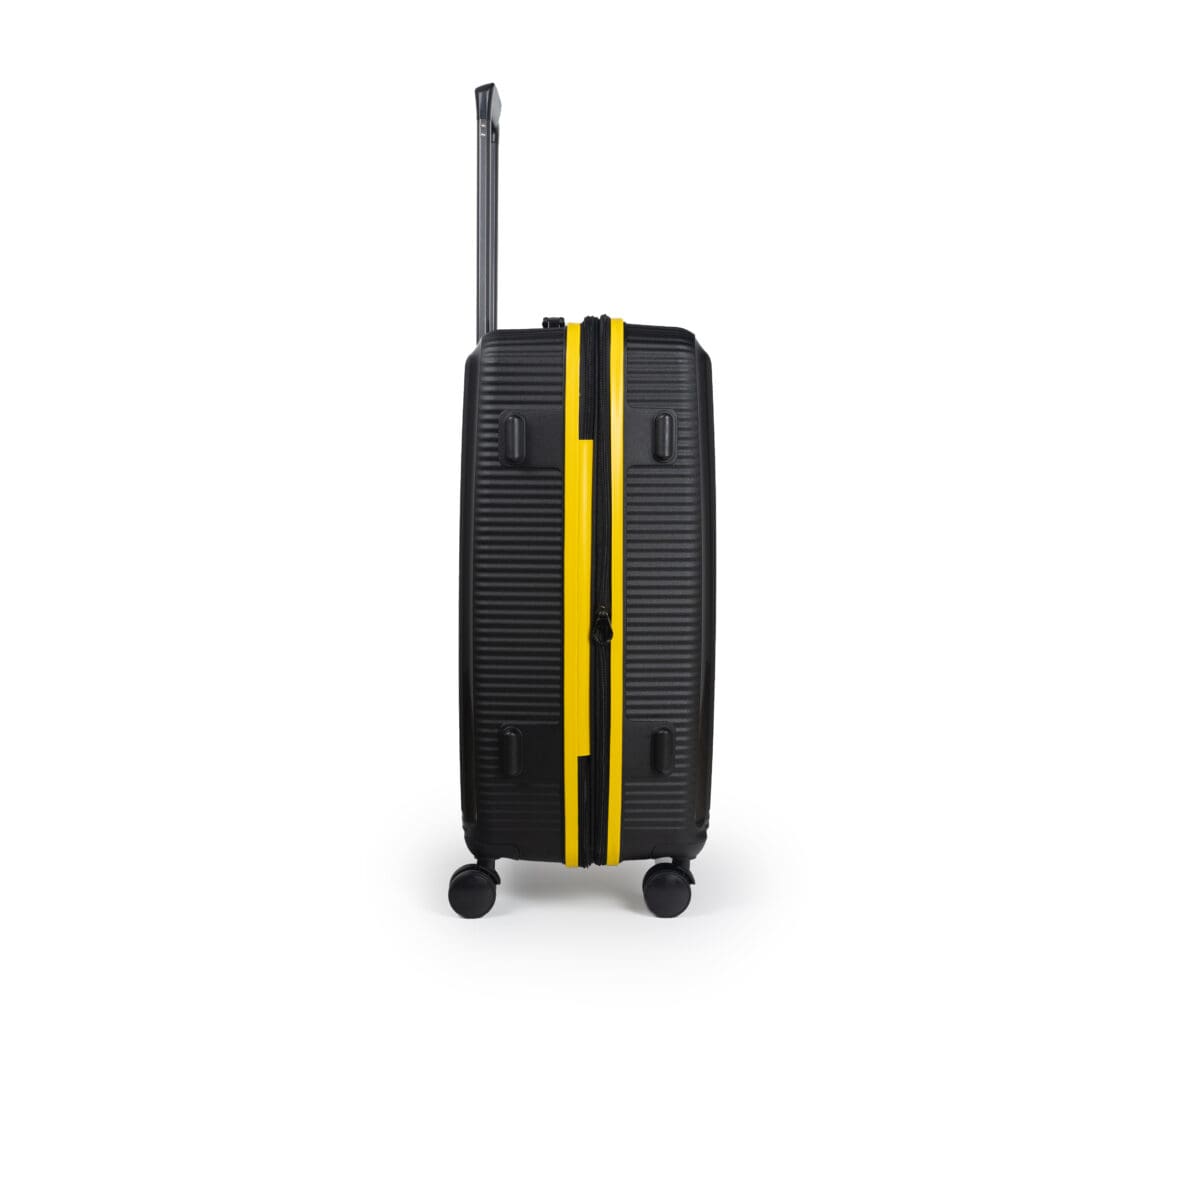 Δεξιά πλευρά βαλίτσας μεσαία με tsa lock διπλά ροδάκια από πολυπροπυλένιο άθραυστο υλικό και επέκταση σε μαύρο χρώμα με κίτρινες λωρίδες .